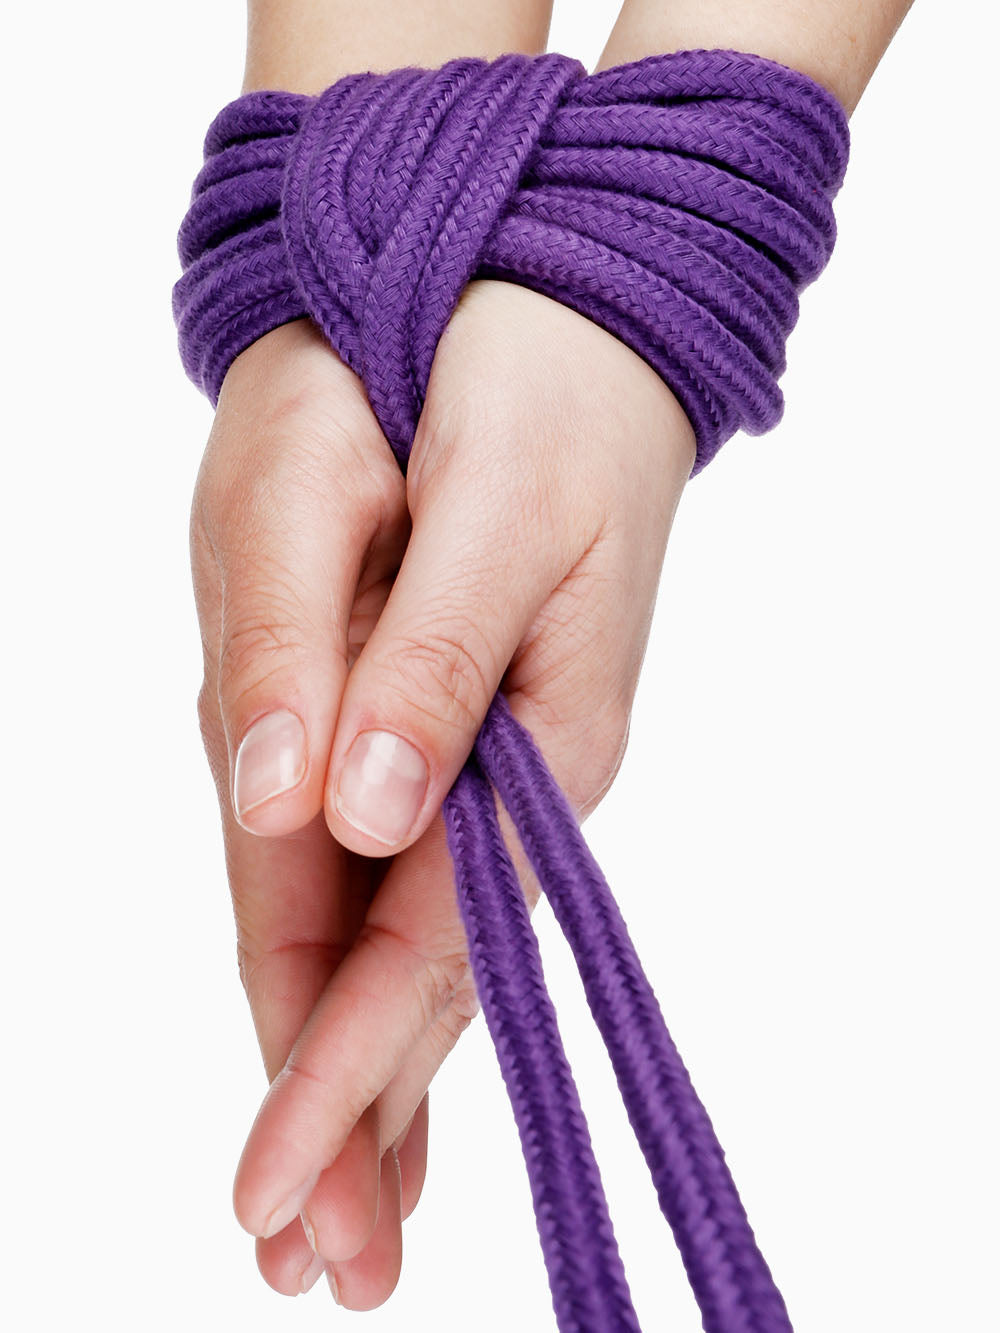 Pillow Talk Bondage Rope, Purple